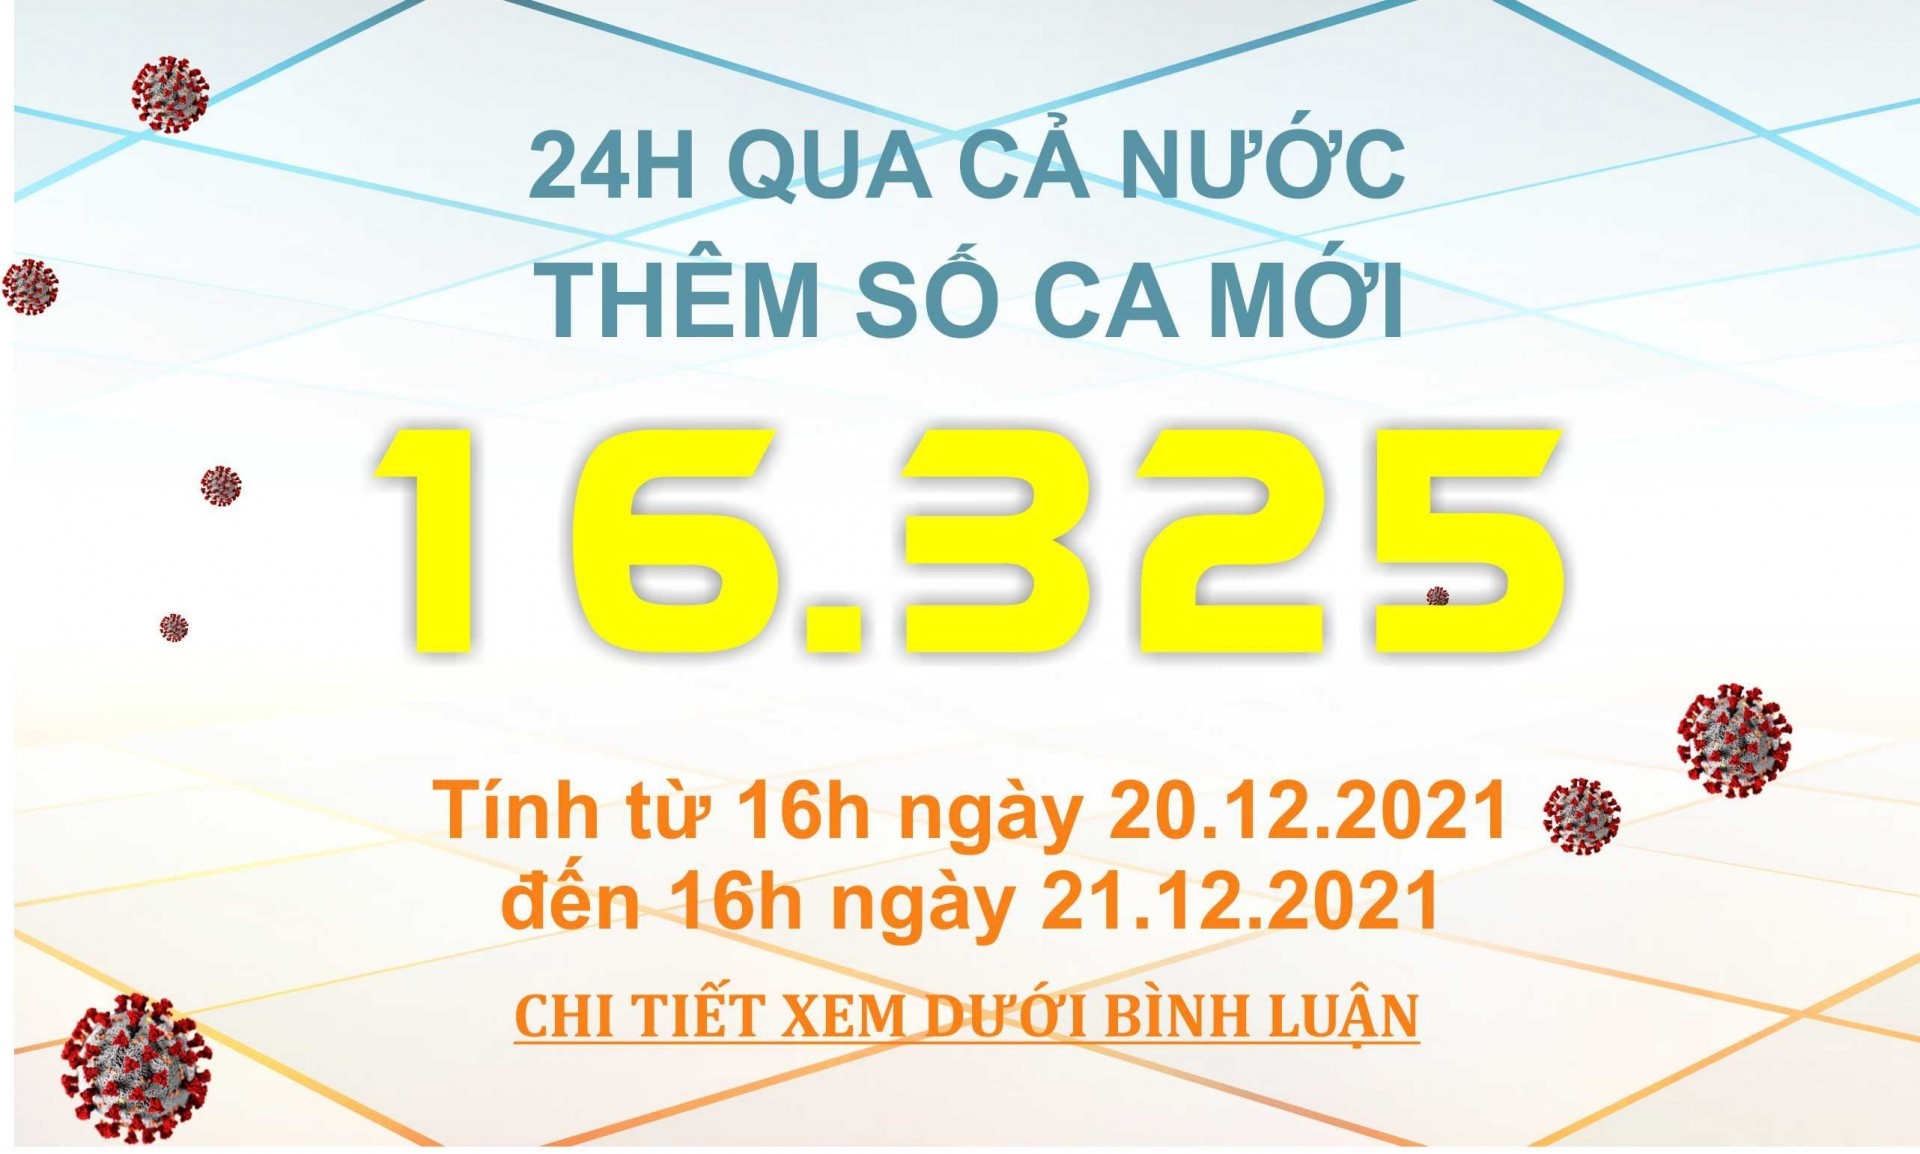 Ngày 21/12: Có 16.325 ca mắc COVID-19, Hà Nội lại nhiều nhất cả nước với 1.704 ca